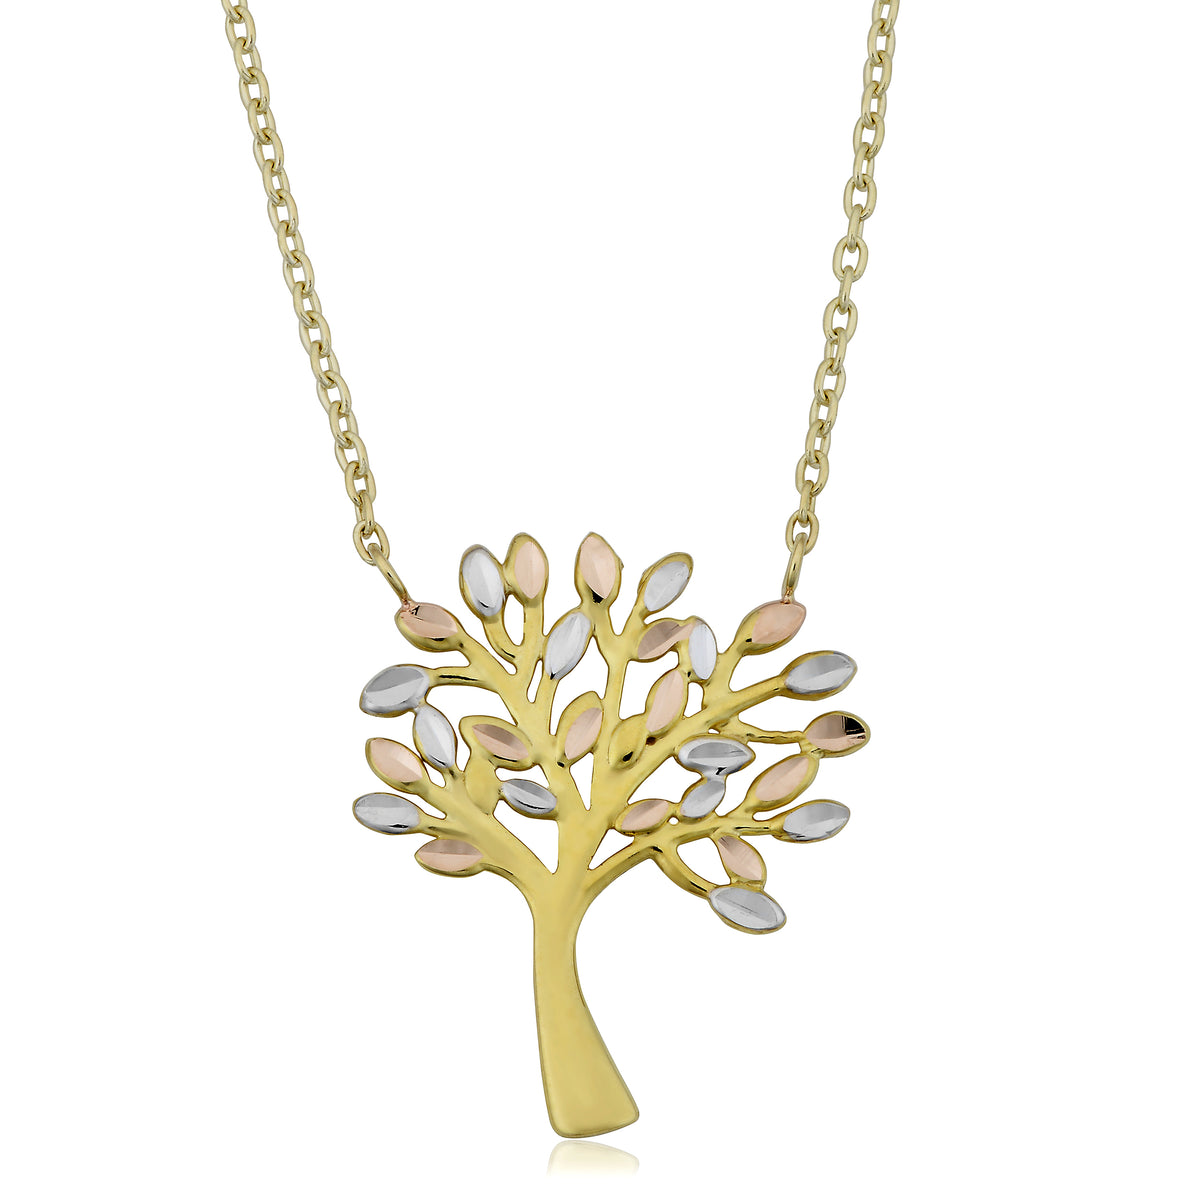 Colgante del árbol de la vida en oro tricolor de 10 quilates en collar ajustable de 43 a 45 cm, joyería fina de diseño para hombres y mujeres